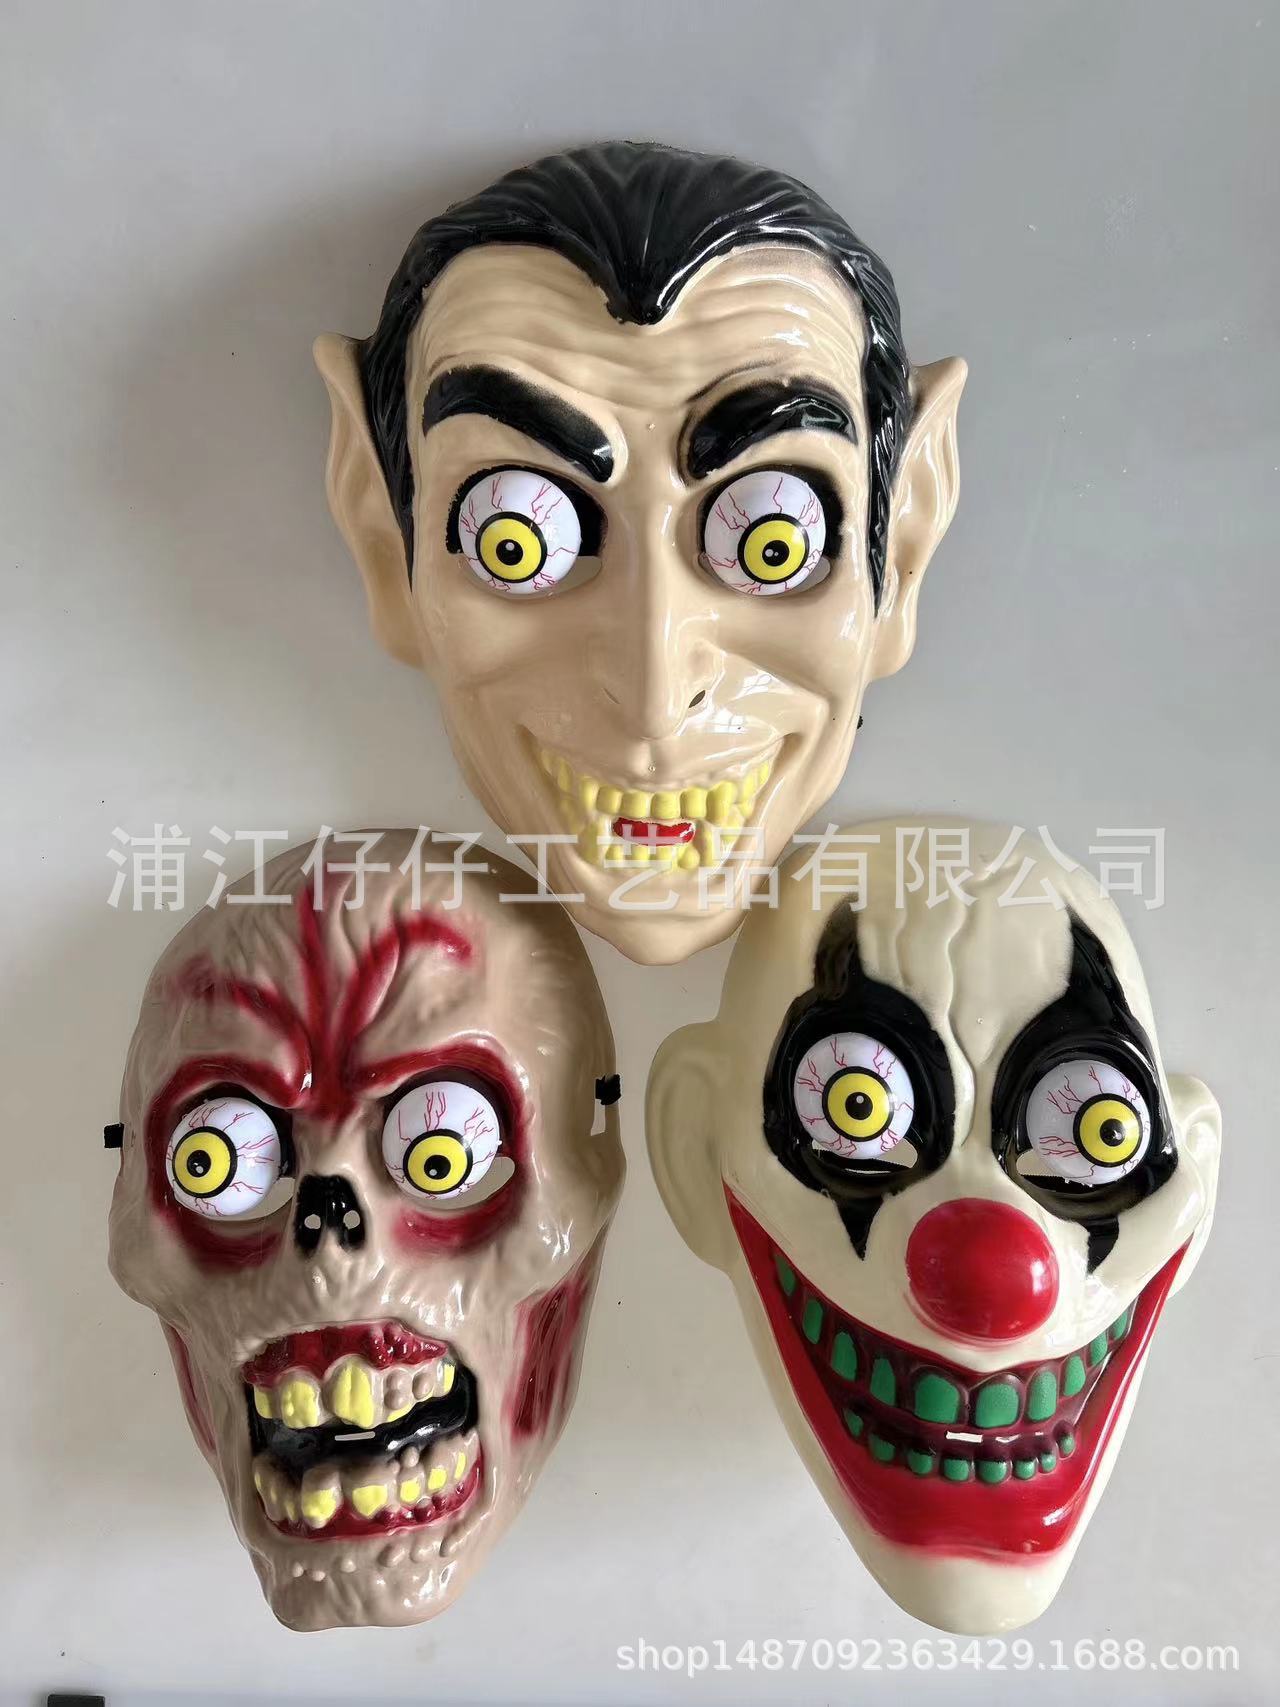 万圣节新款小丑面具狂欢派对僵尸鬼脸弹簧眼珠鬼节恐怖化妆舞会